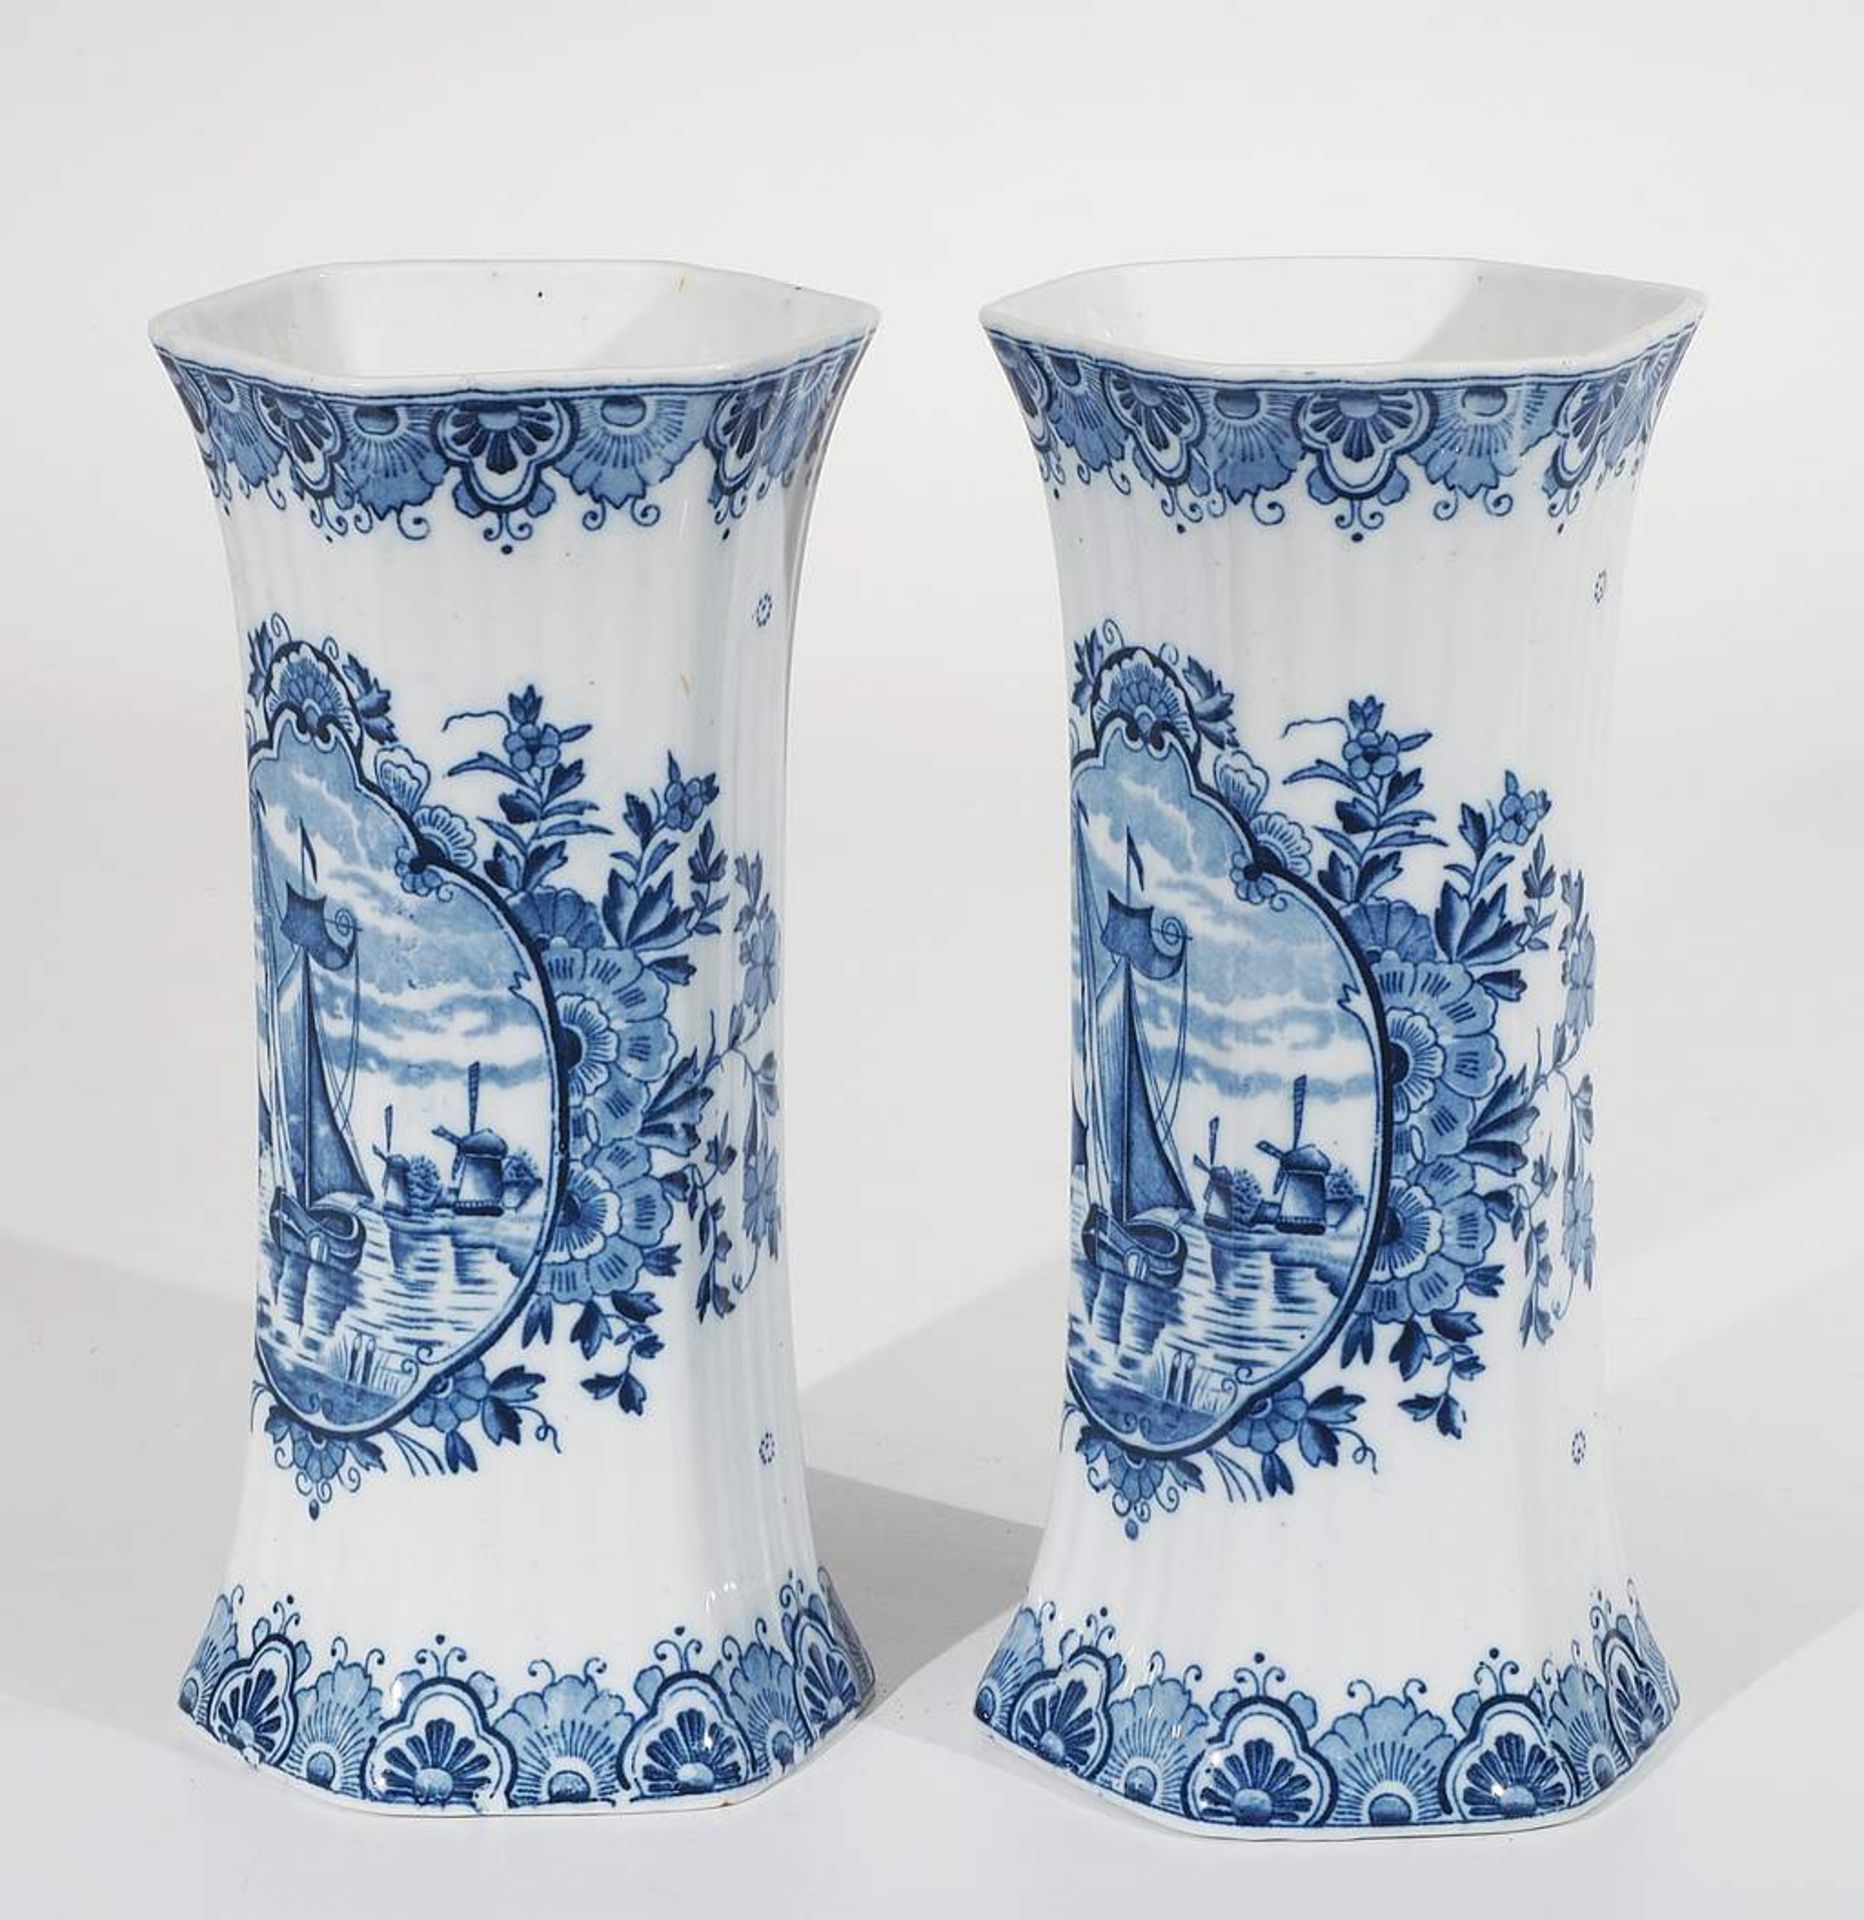 Delfter Fayence Vasenpaar. 20. Jahrhundert, sechseckige hohe Form, kobaltblaue Blumenbemalung, sch - Image 3 of 7